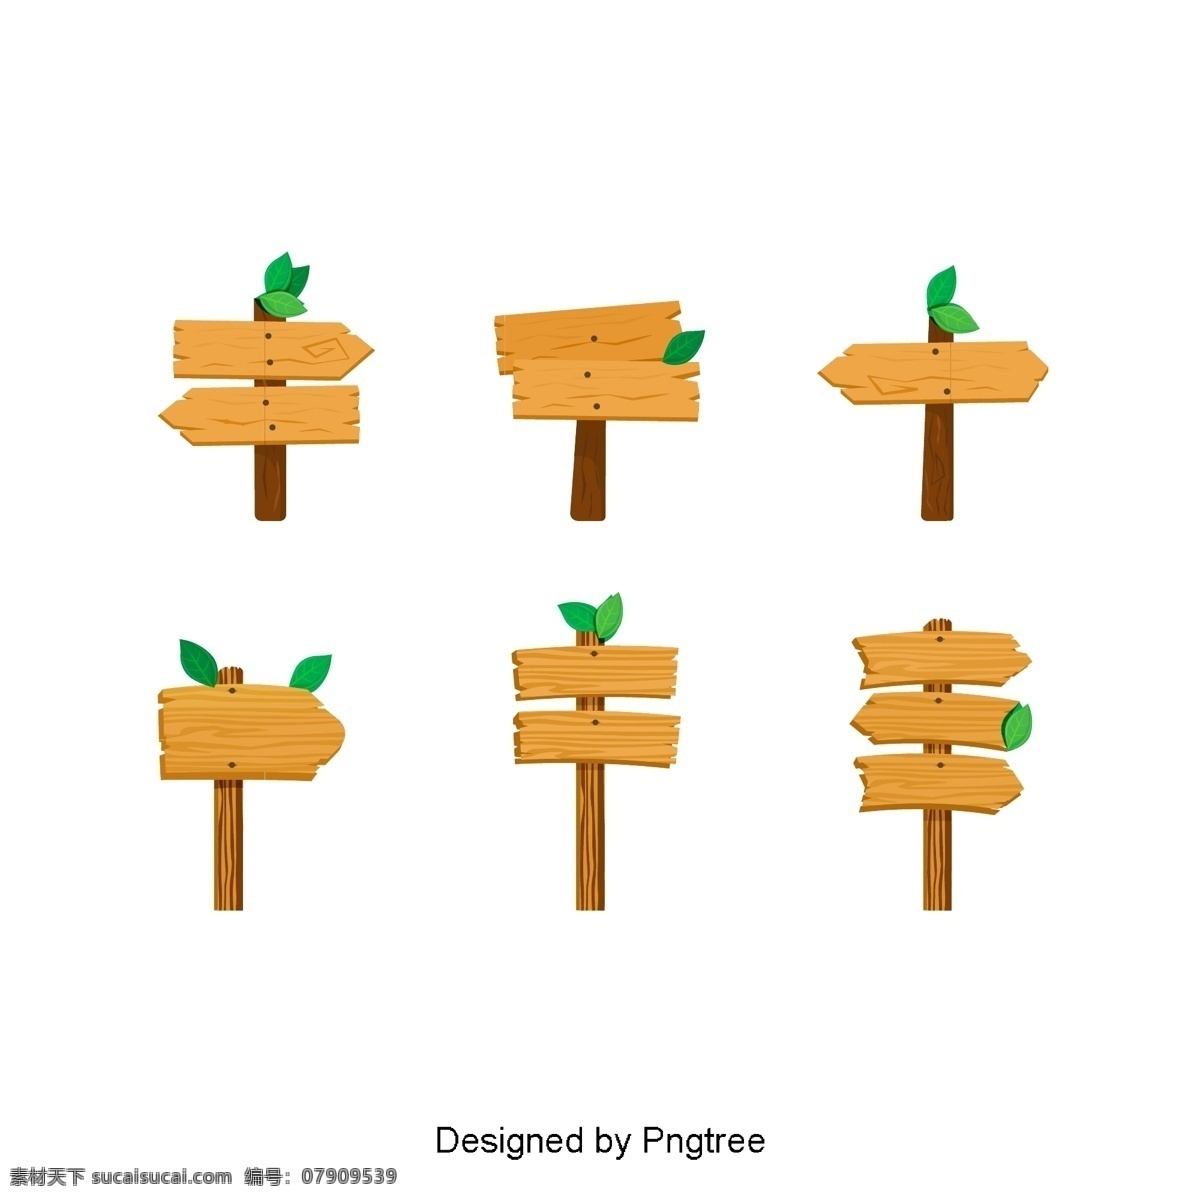 简单 的卡 通 木 标牌 木材 说明 图案 图形 材料 图像 装饰 元素